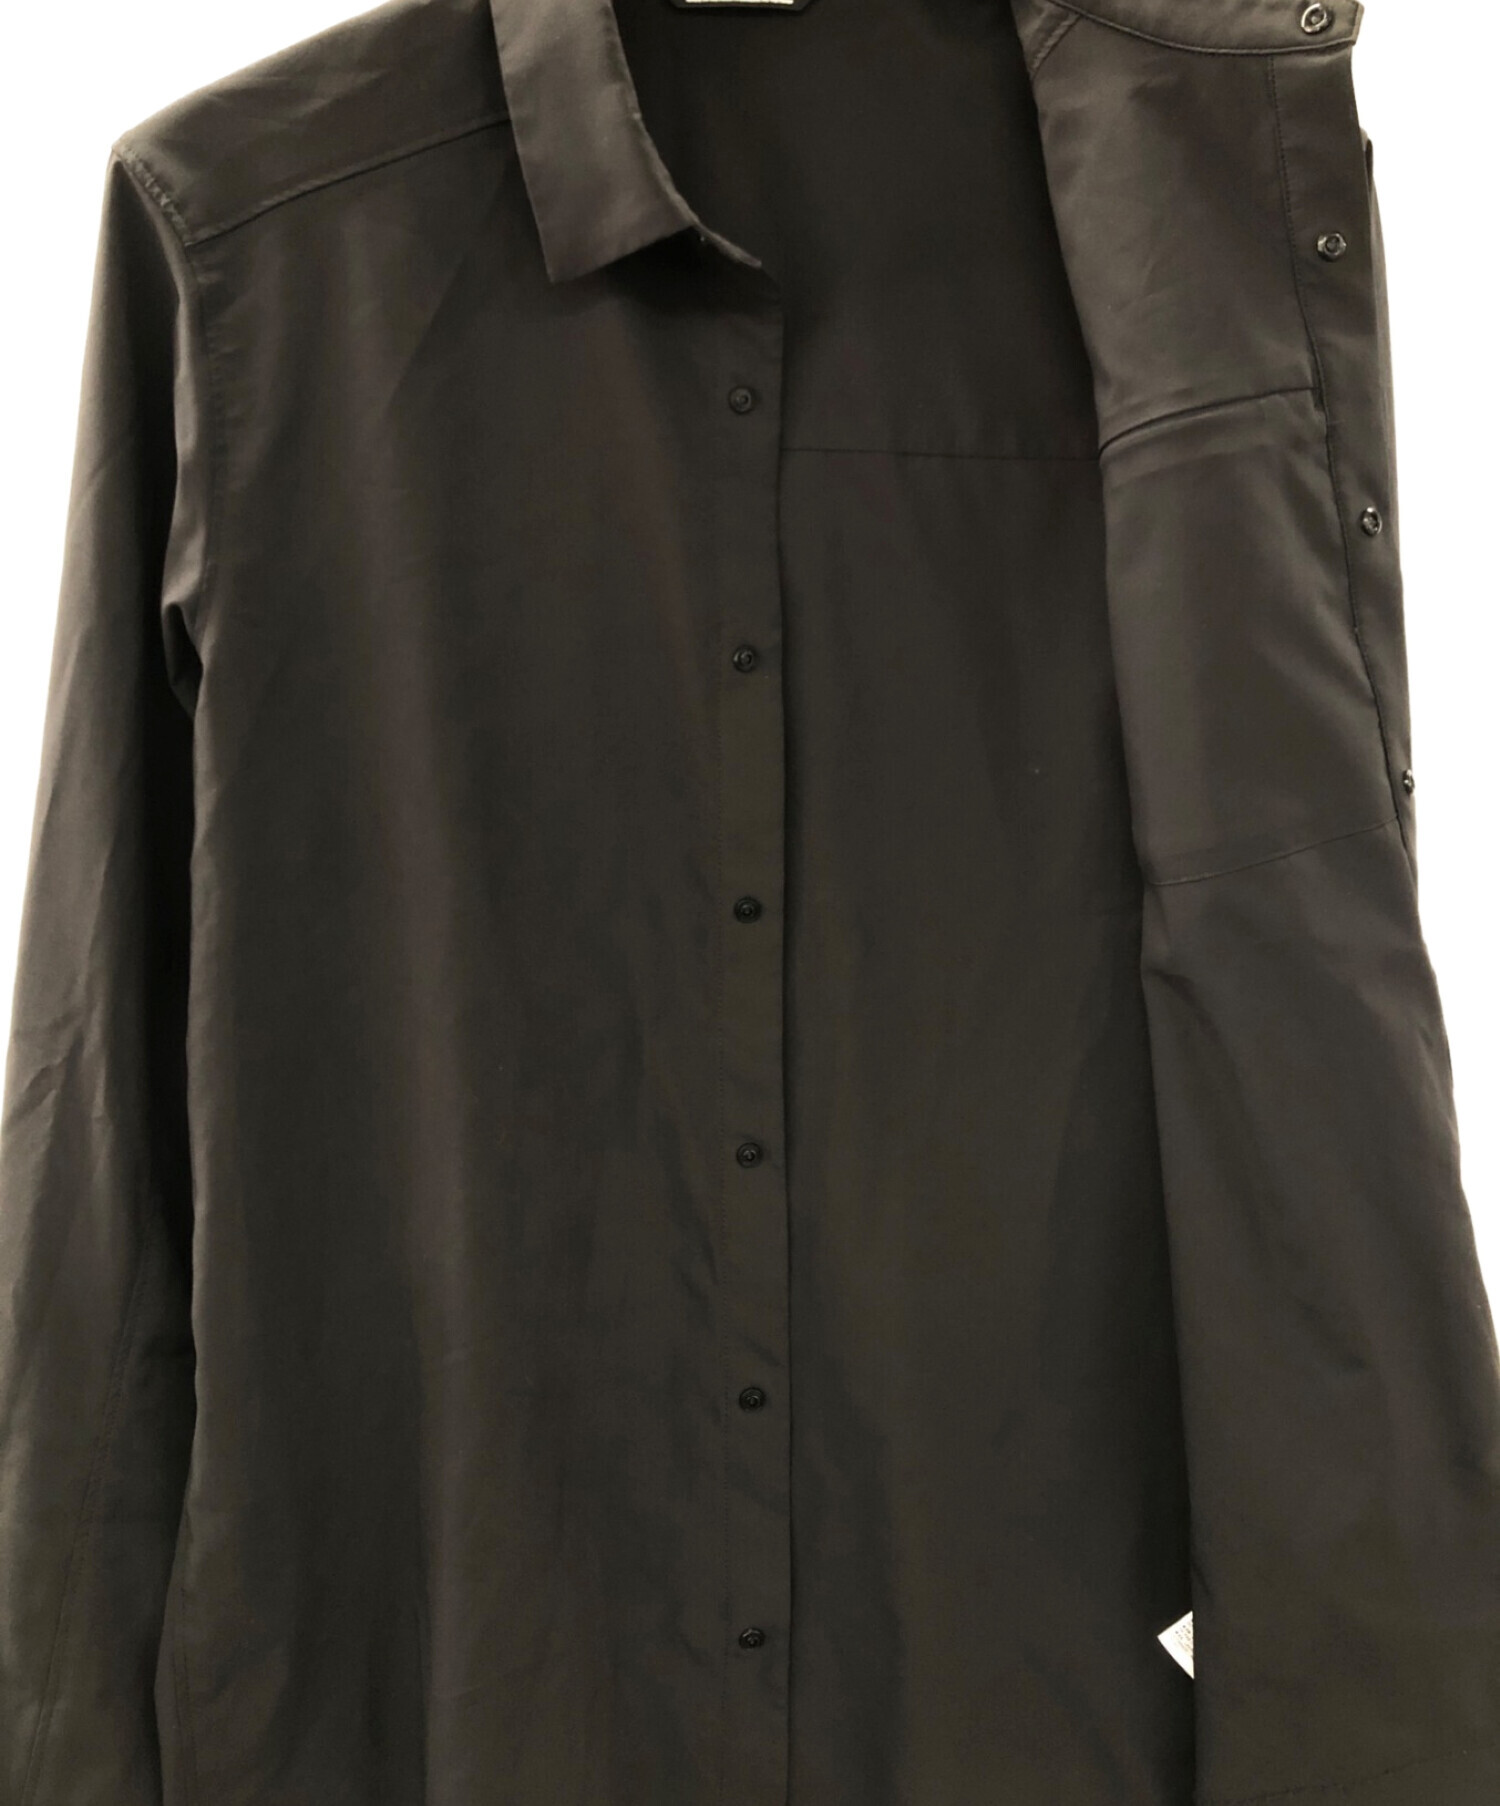 ARC'TERYX (アークテリクス) スカイラインシャツ ブラック サイズ:S